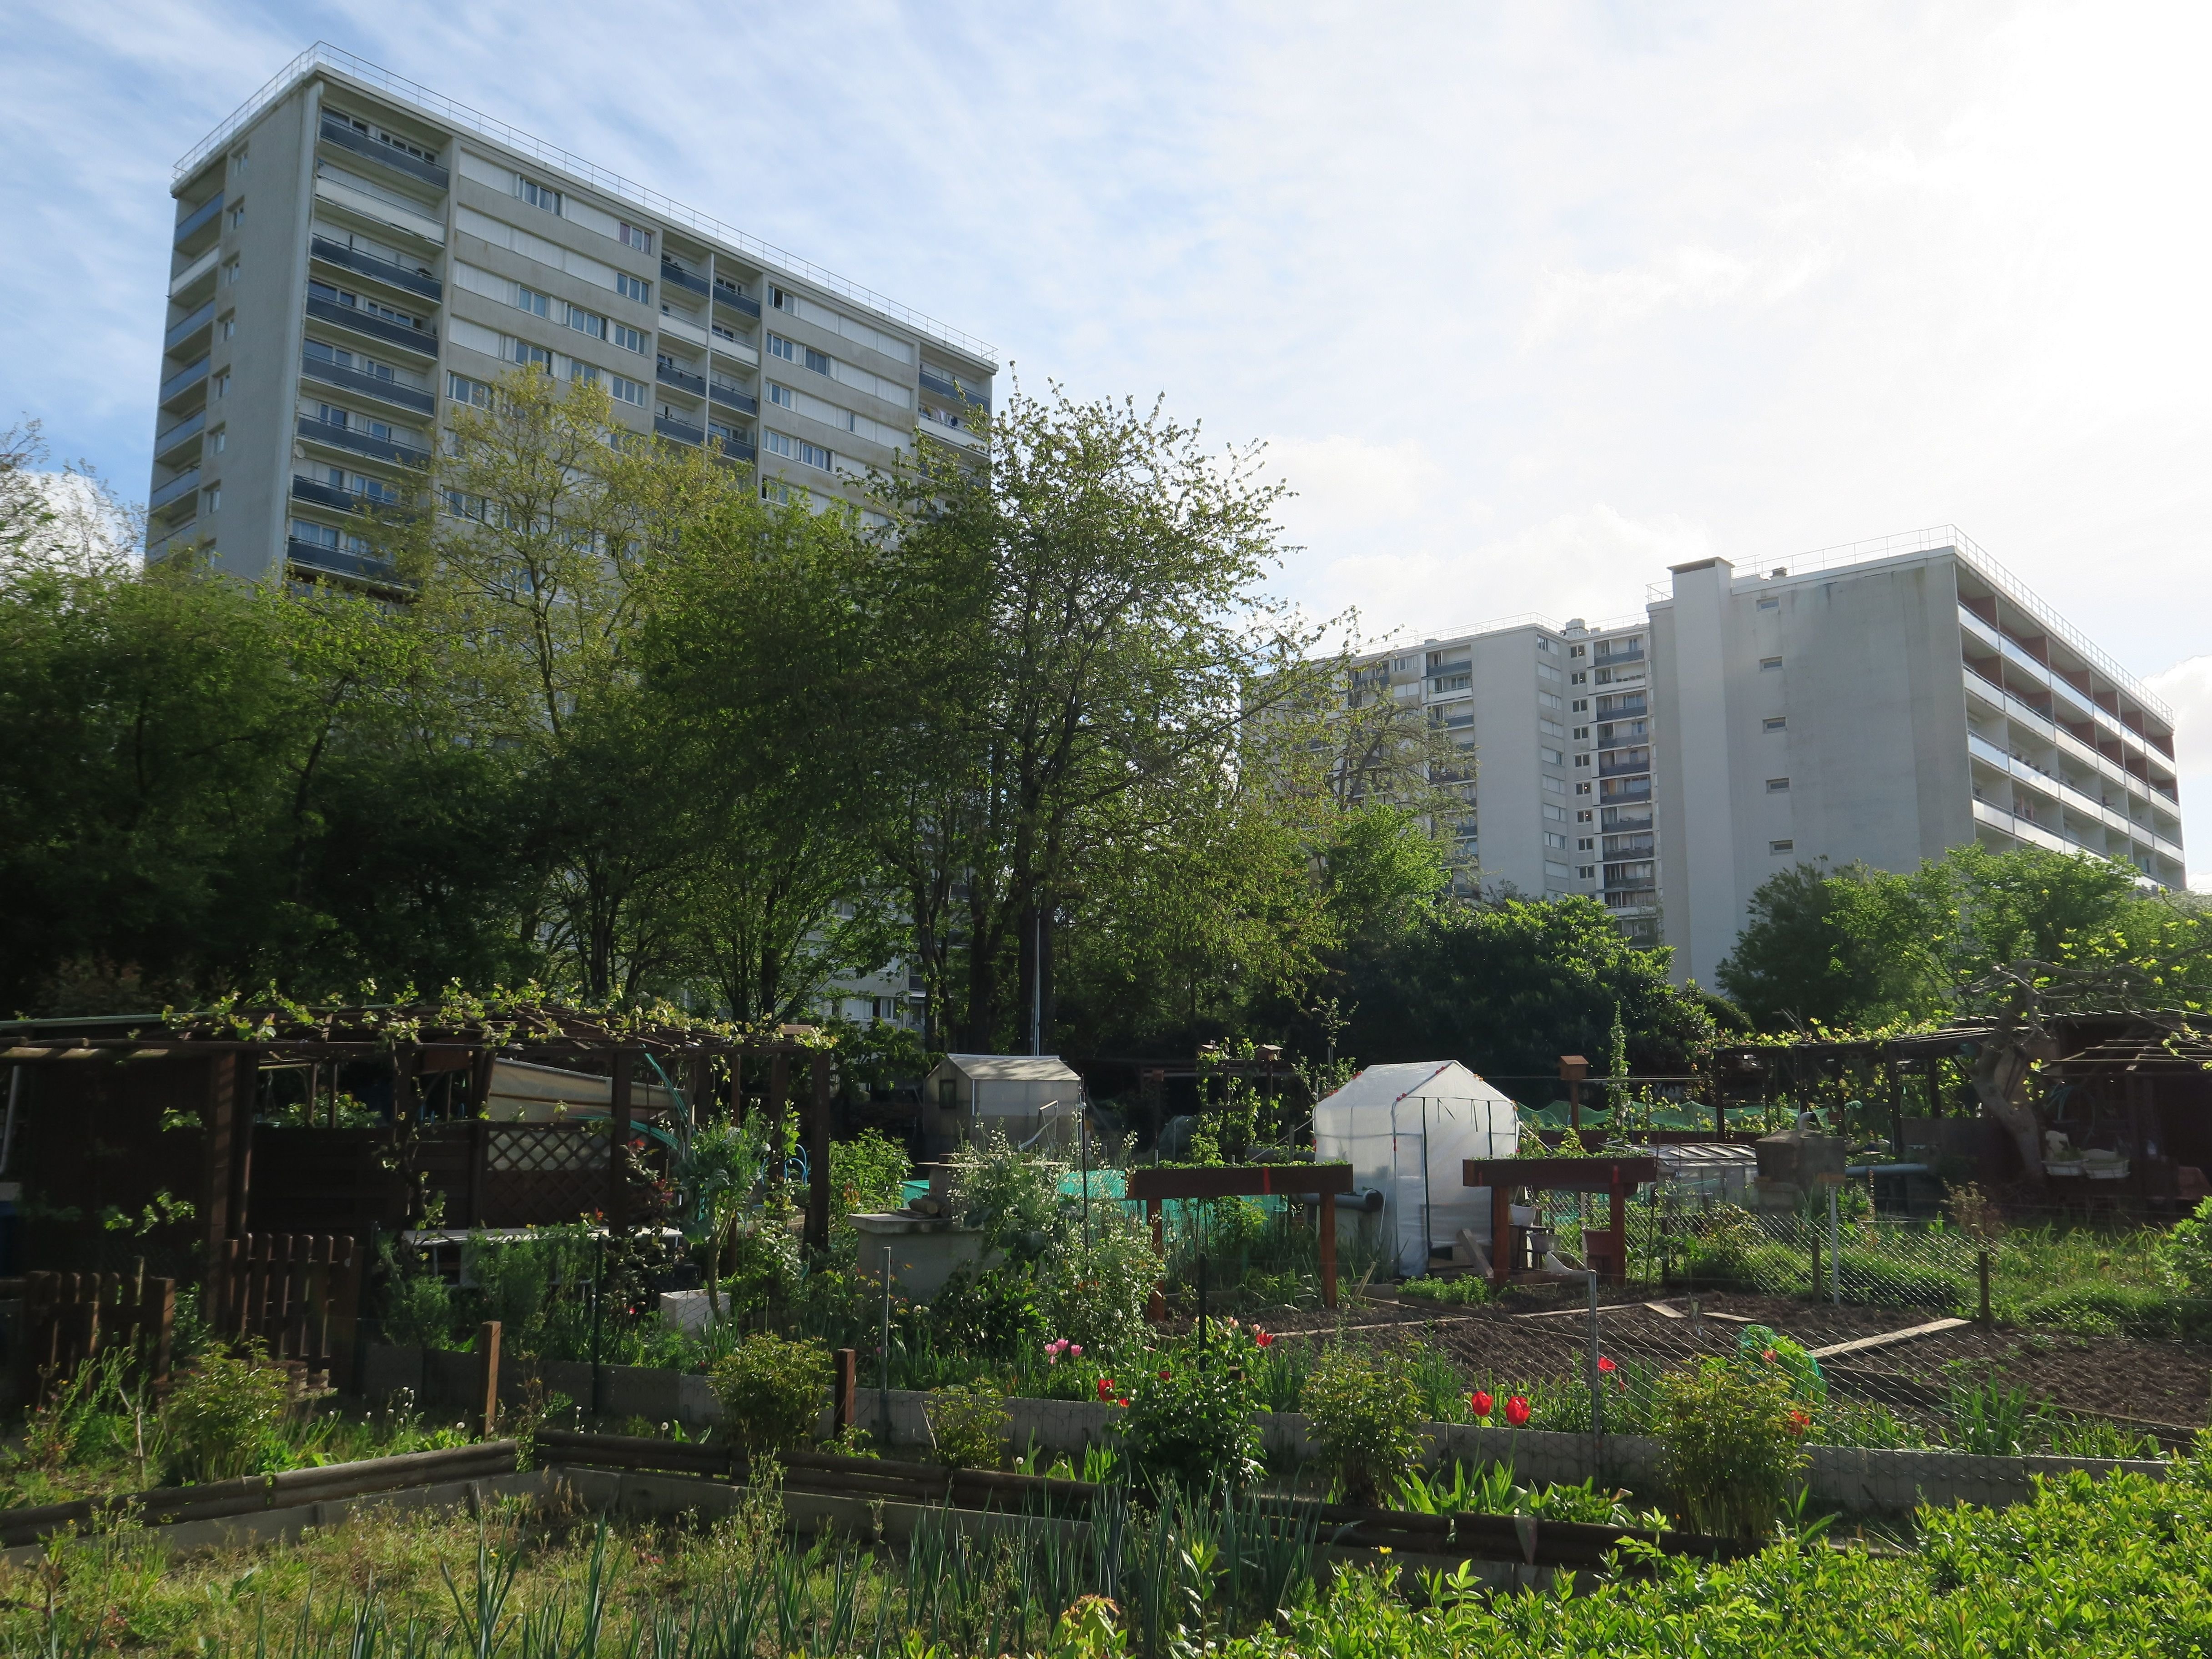 Au pied des tours, les jardins familiaux de Ris-Orangis (Essonne) bénéficient de financements quartier prioritaire de la ville. LP/Sébastien Morelli